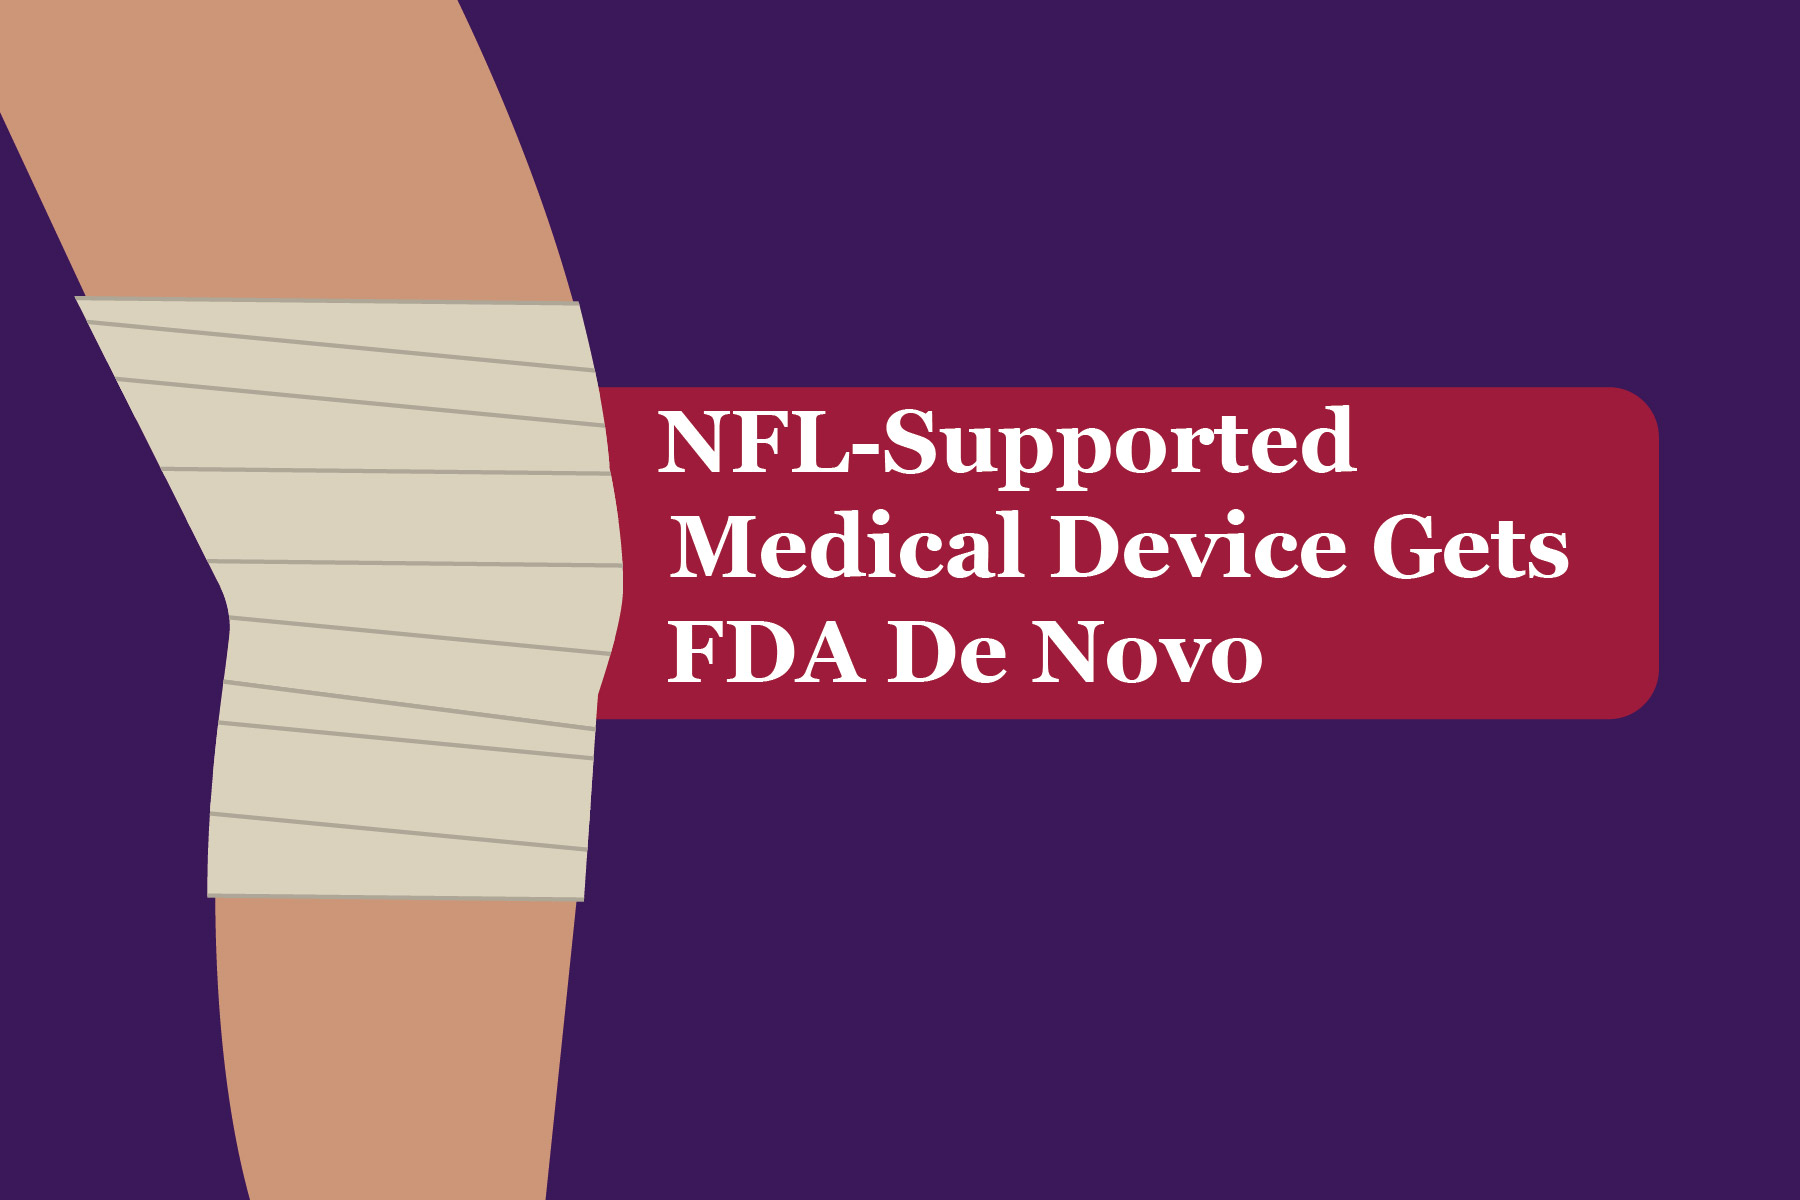 NFL-Supported Medical Device gets FDA De Novo